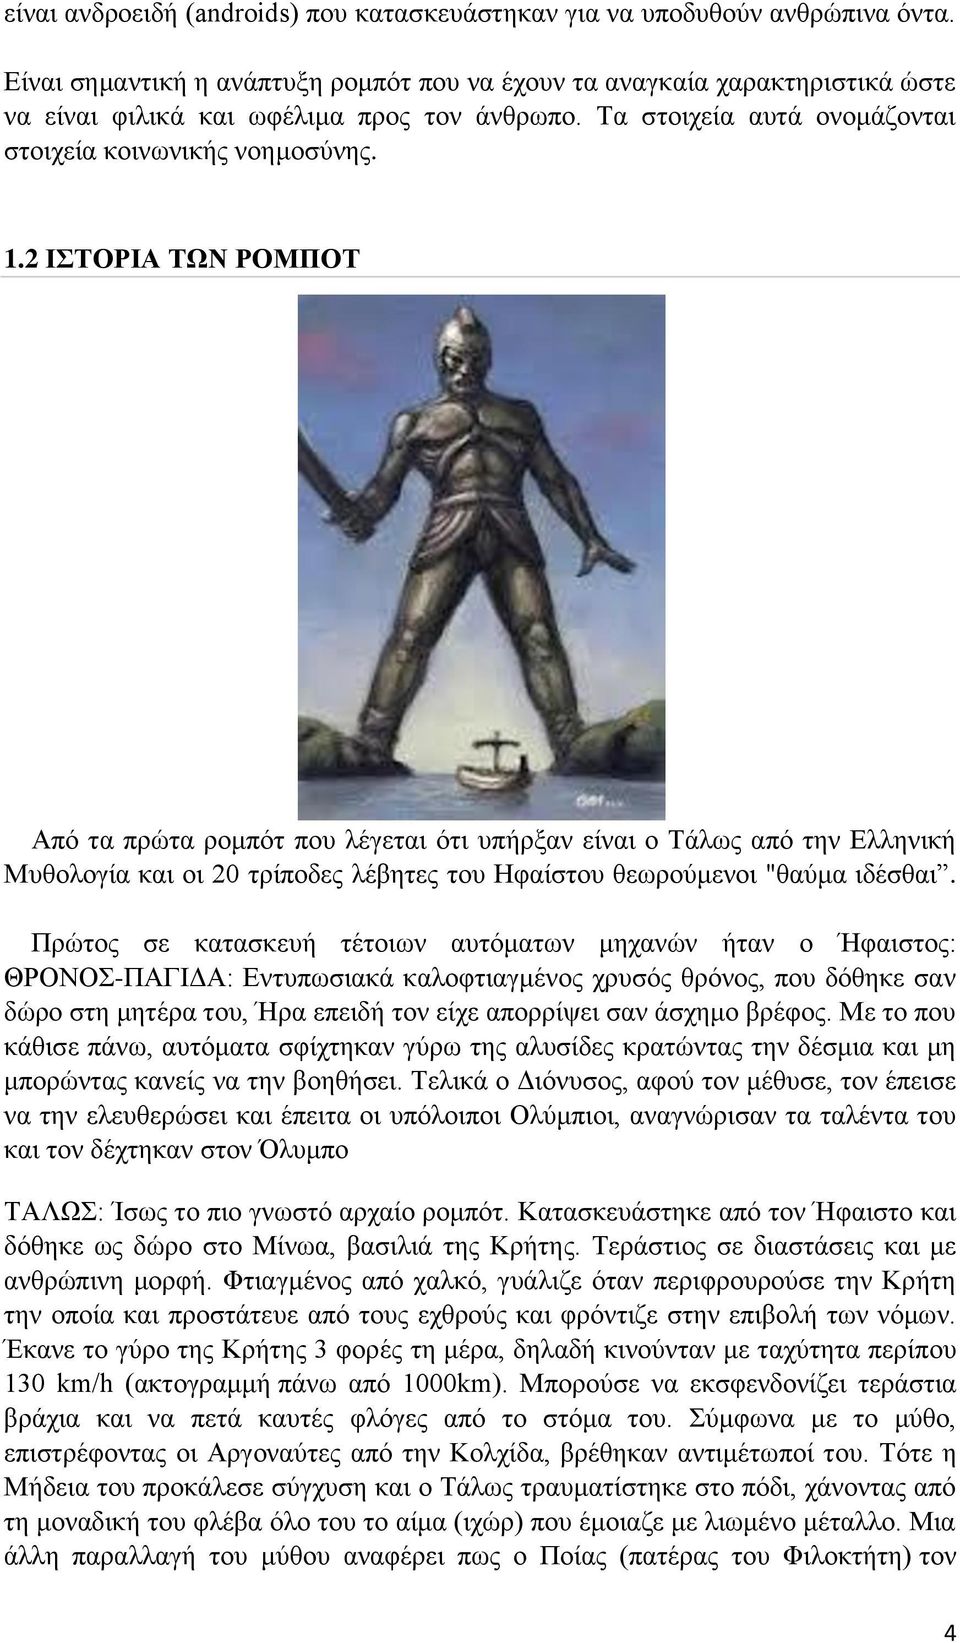 2 ΙΣΤΟΡΙΑ ΤΩΝ ΡΟΜΠΟΤ Από τα πρώτα ρομπότ που λέγεται ότι υπήρξαν είναι ο Τάλως από την Ελληνική Μυθολογία και οι 20 τρίποδες λέβητες του Ηφαίστου θεωρούμενοι "θαύμα ιδέσθαι.